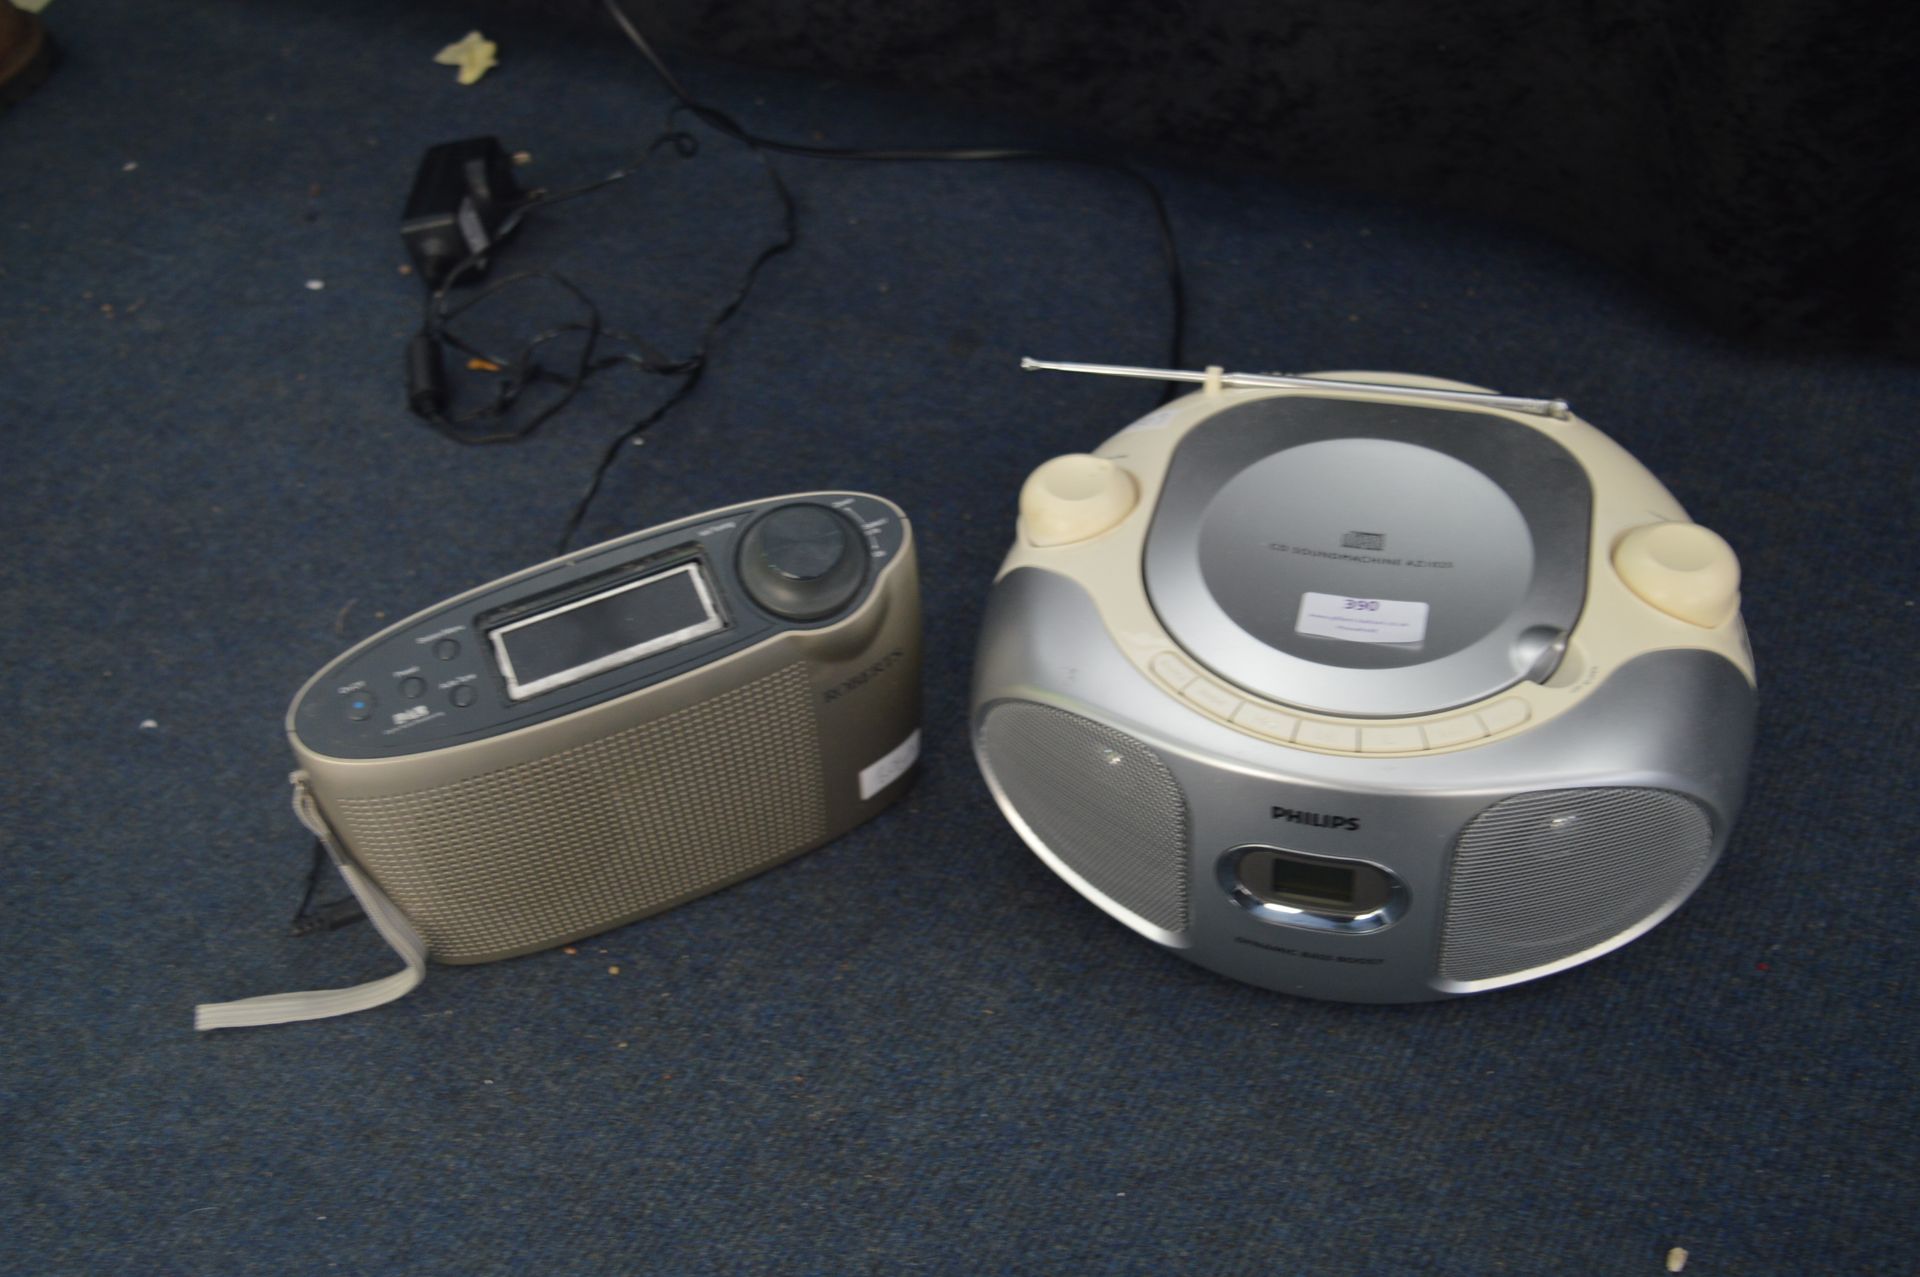 Philips CD Sound Machine and a Robert DAB Radio